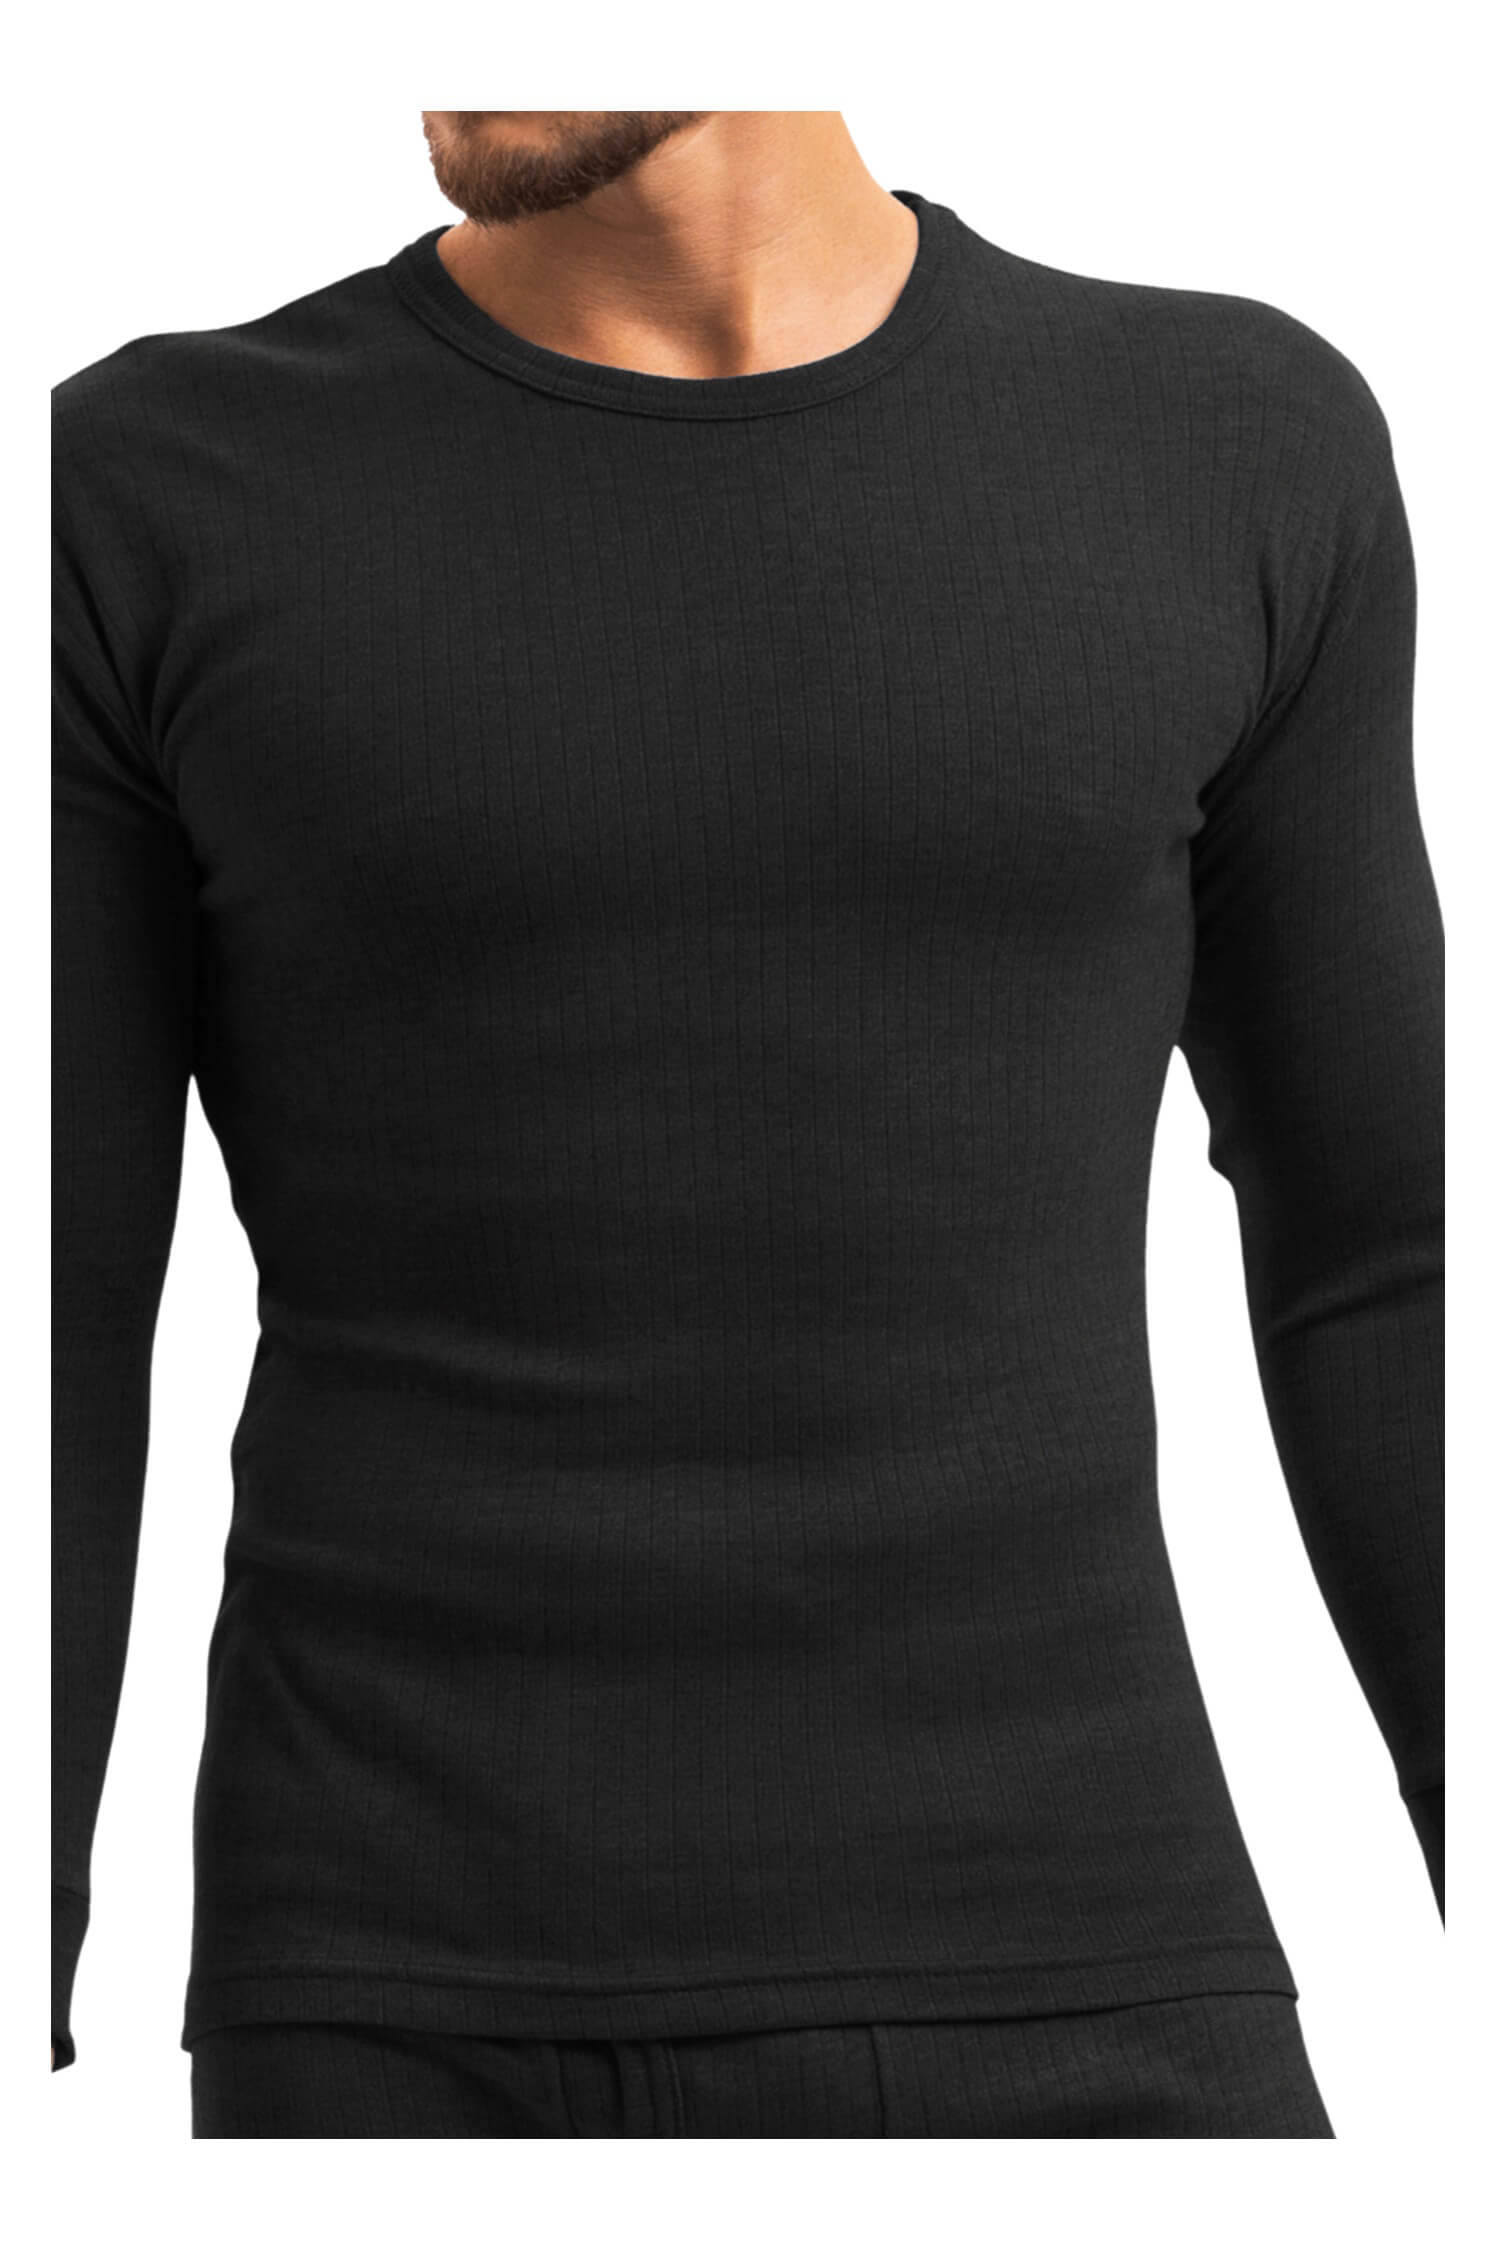 Braňo pánské thermo tričko 256 černá XL